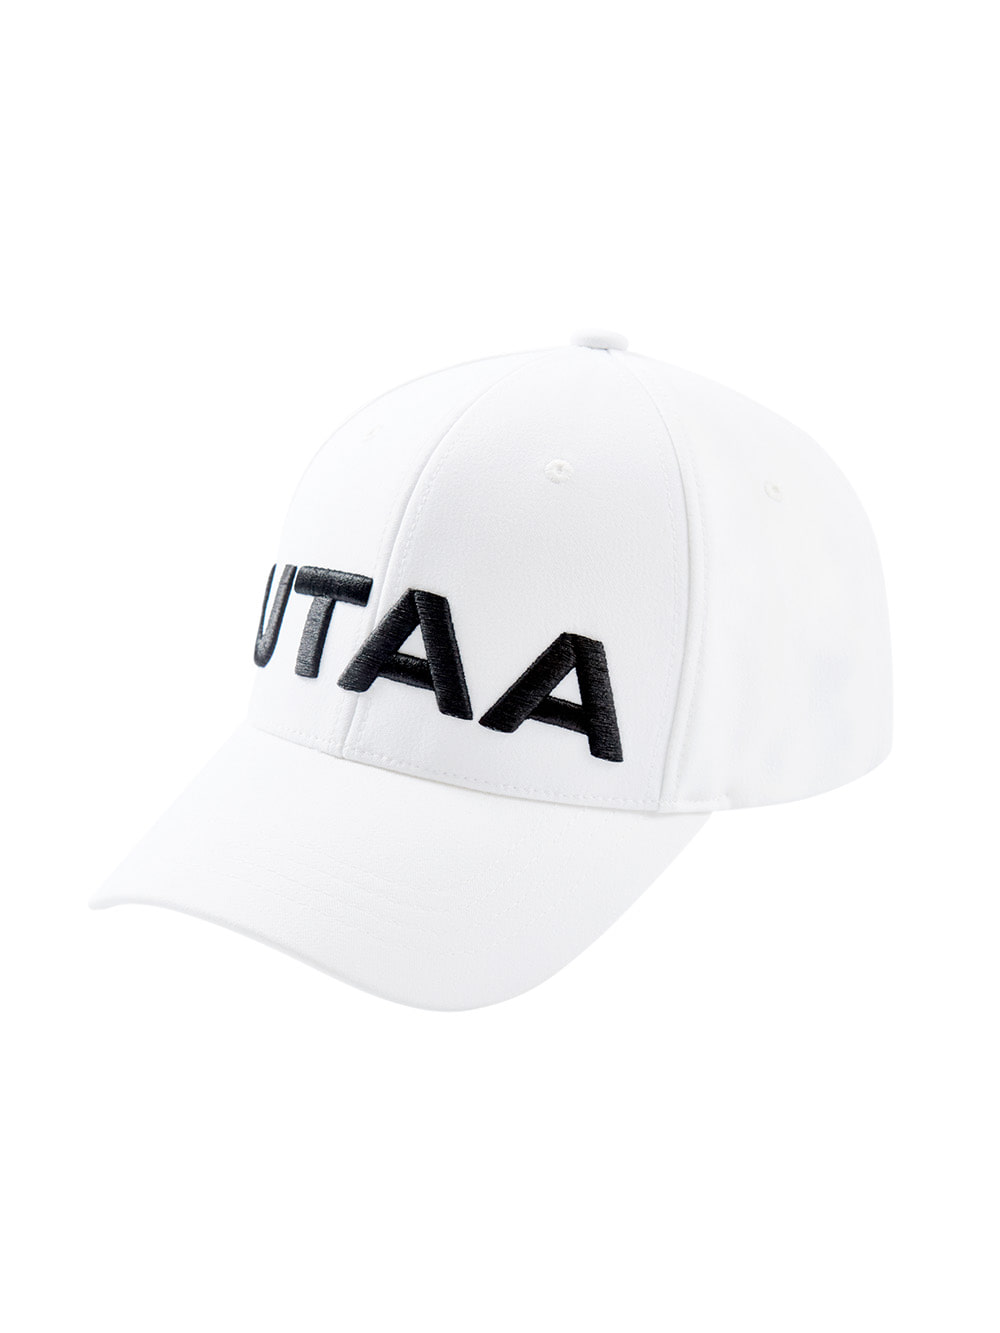 UTAA Logo Golf Cap : White  (UA0GCU113WH)